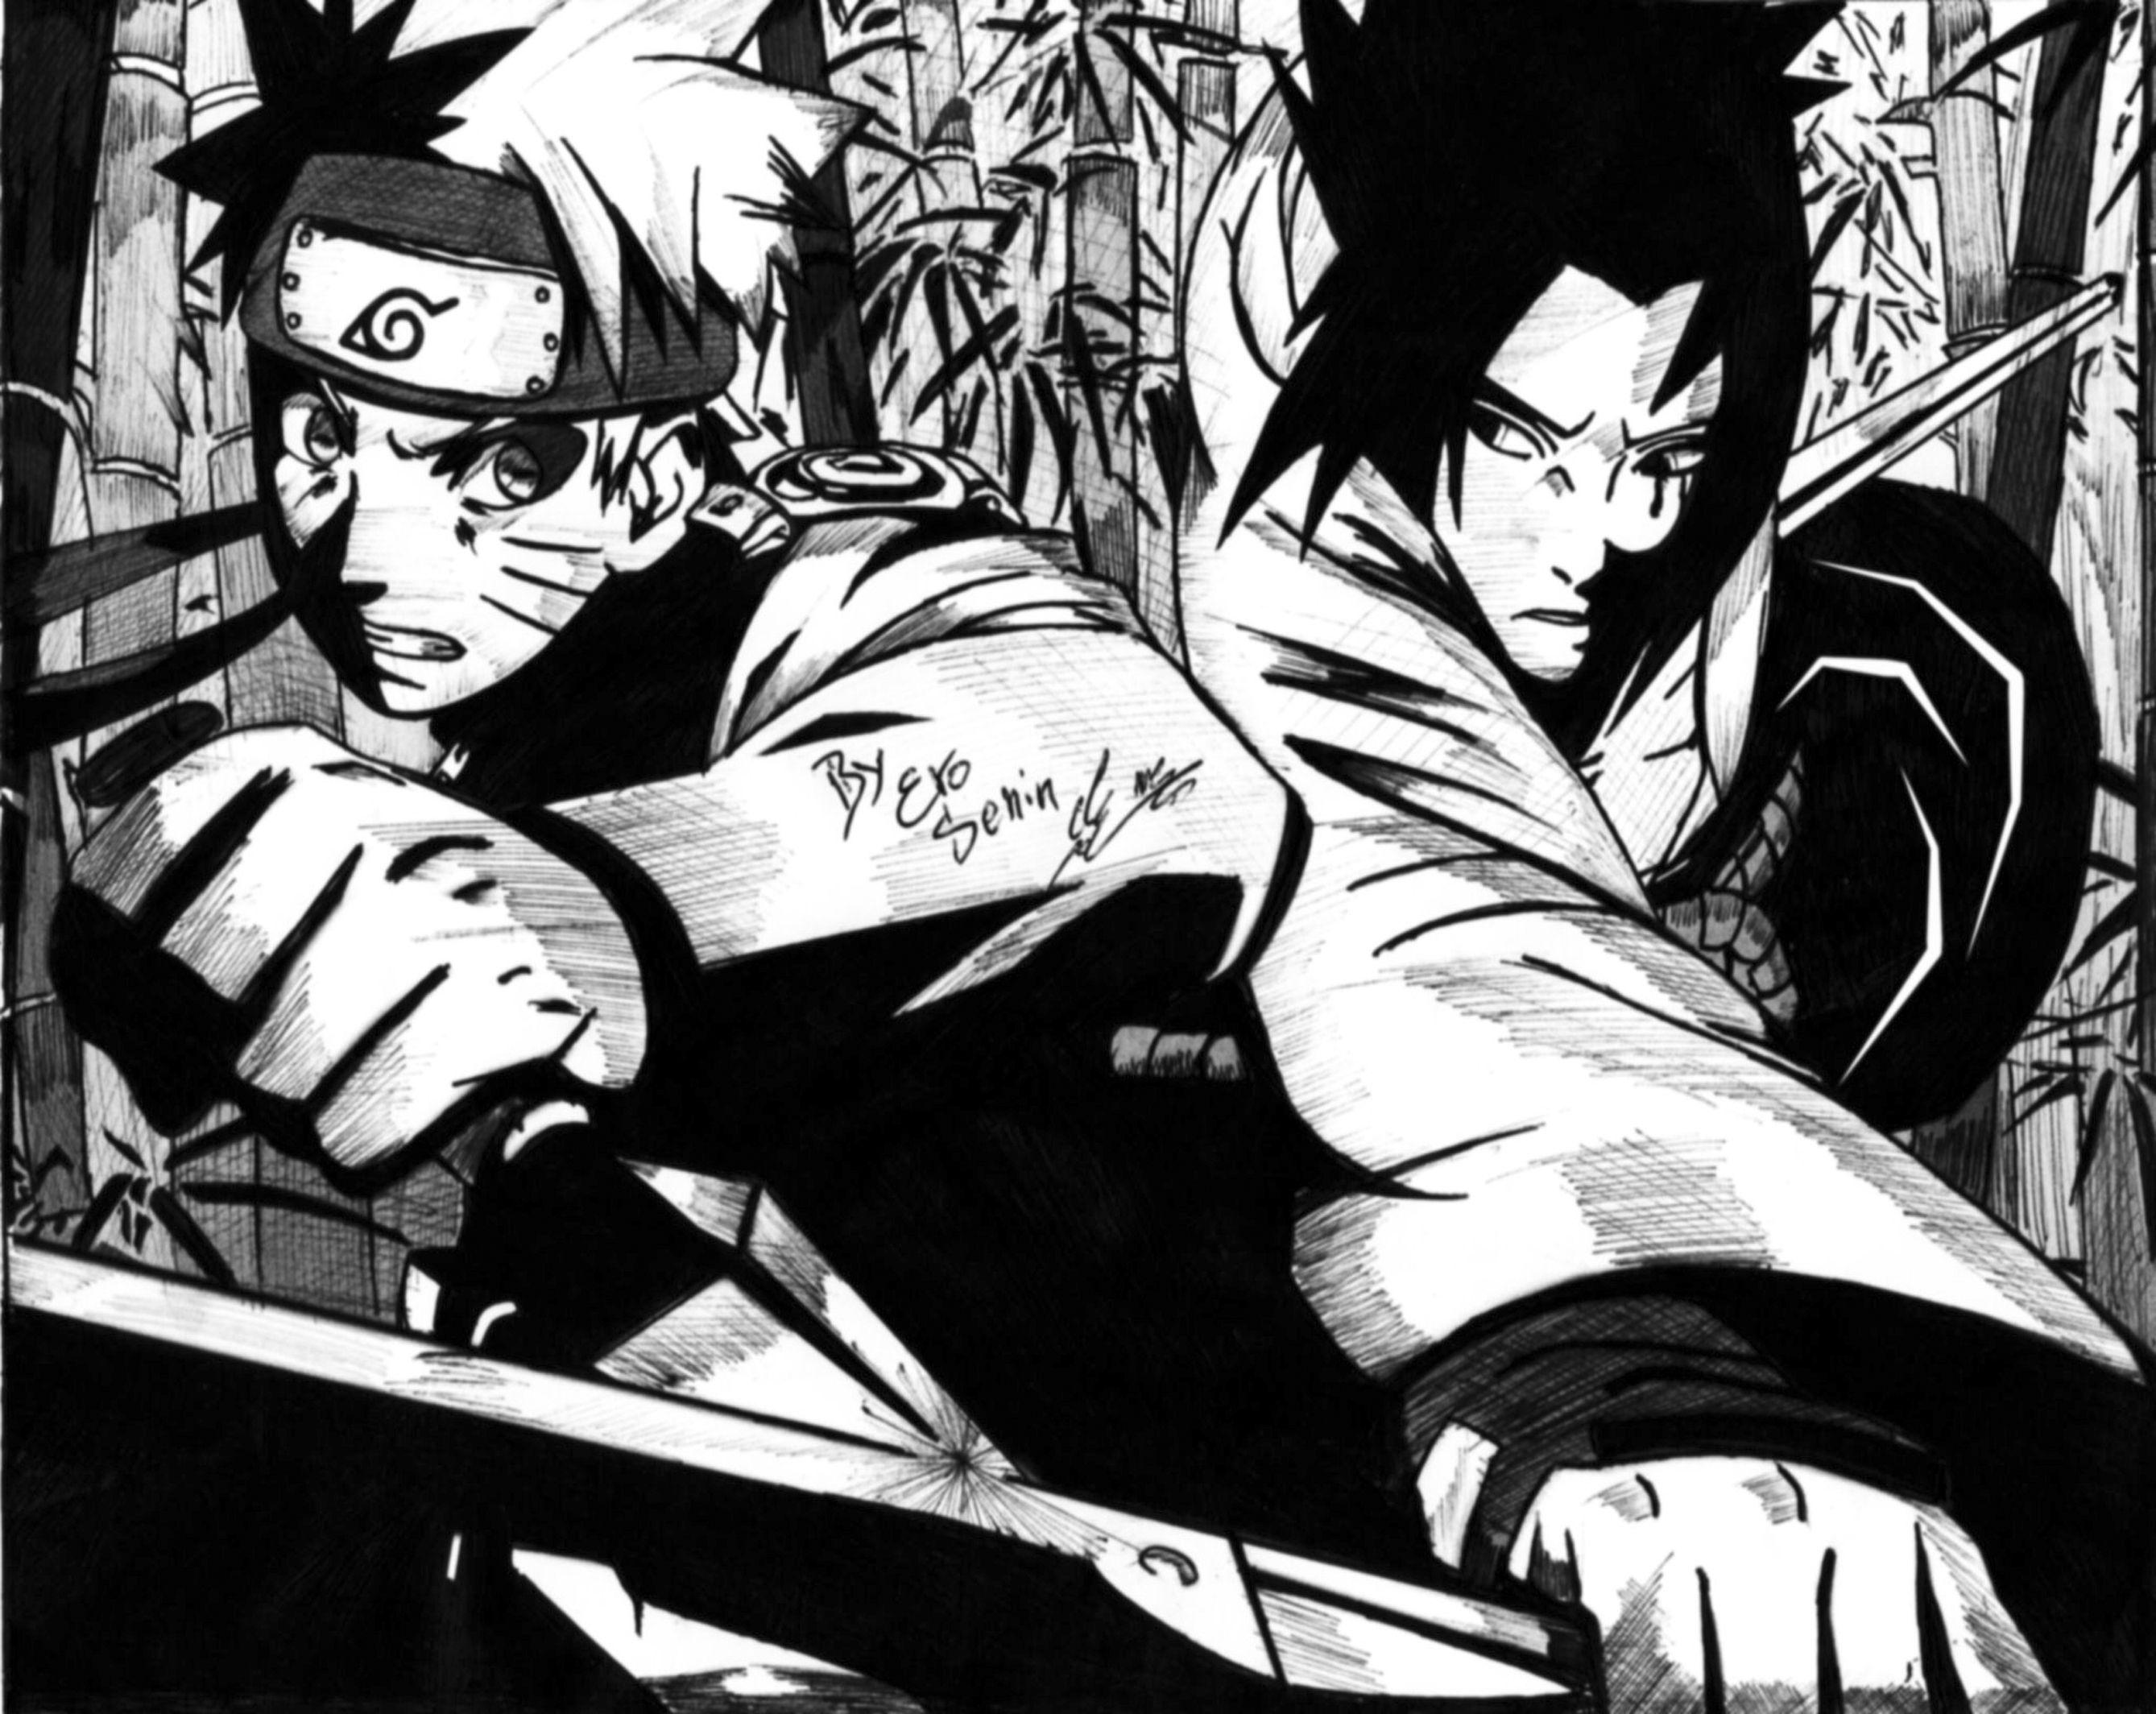 Naruto vs. Sasuke image naruto vs sasuke HD wallpaper